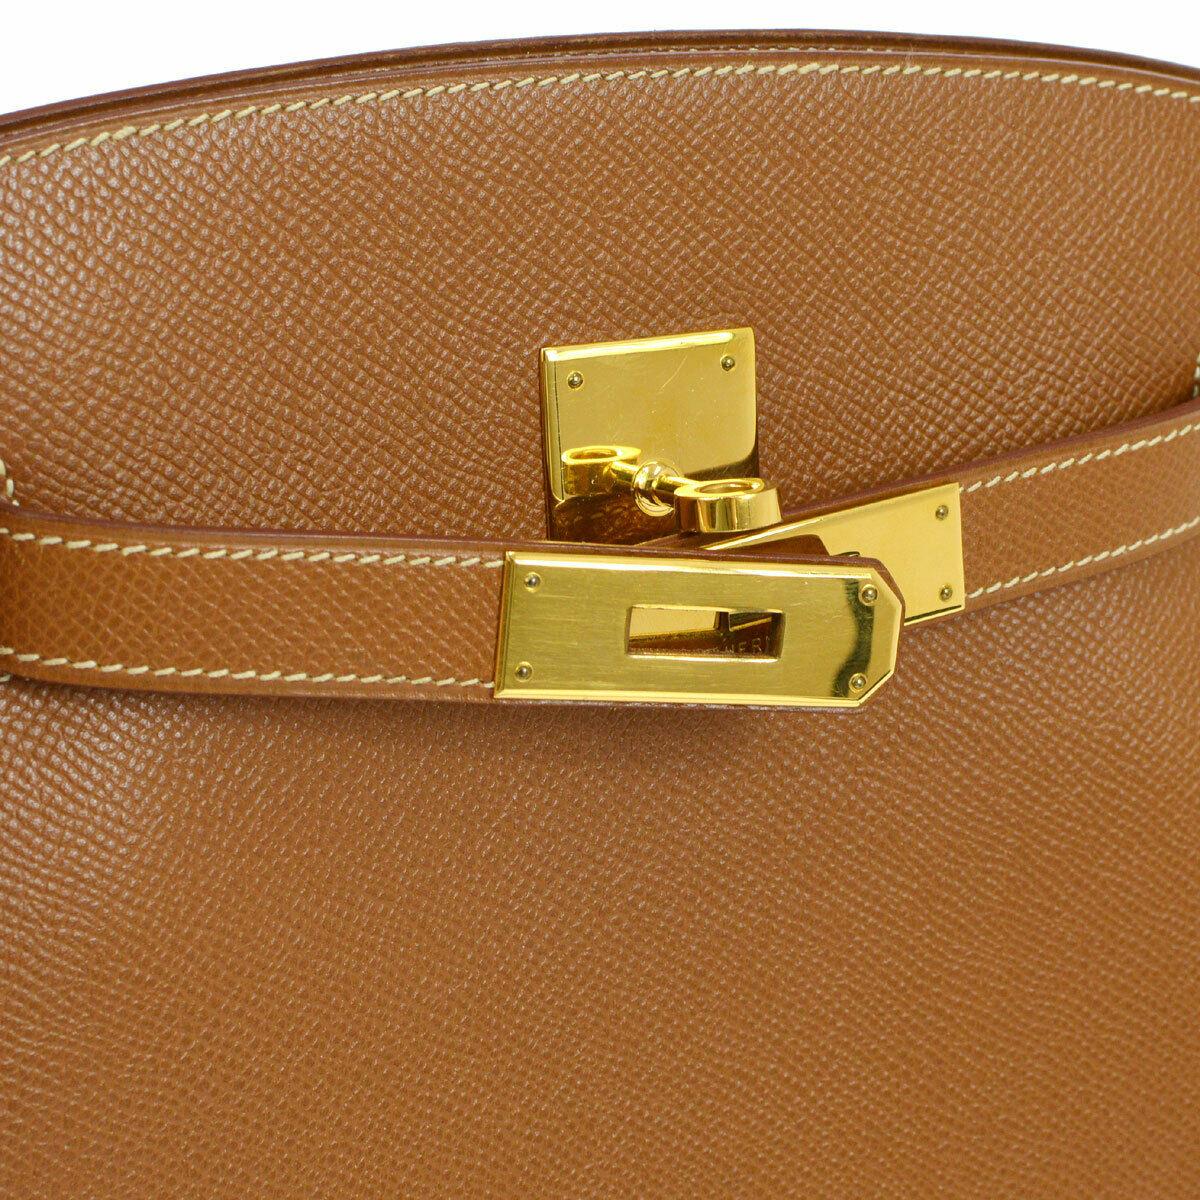 Brown Hermes Cognac Leather Gold Hardware Travel Single Shoulder Large Carryall Bag